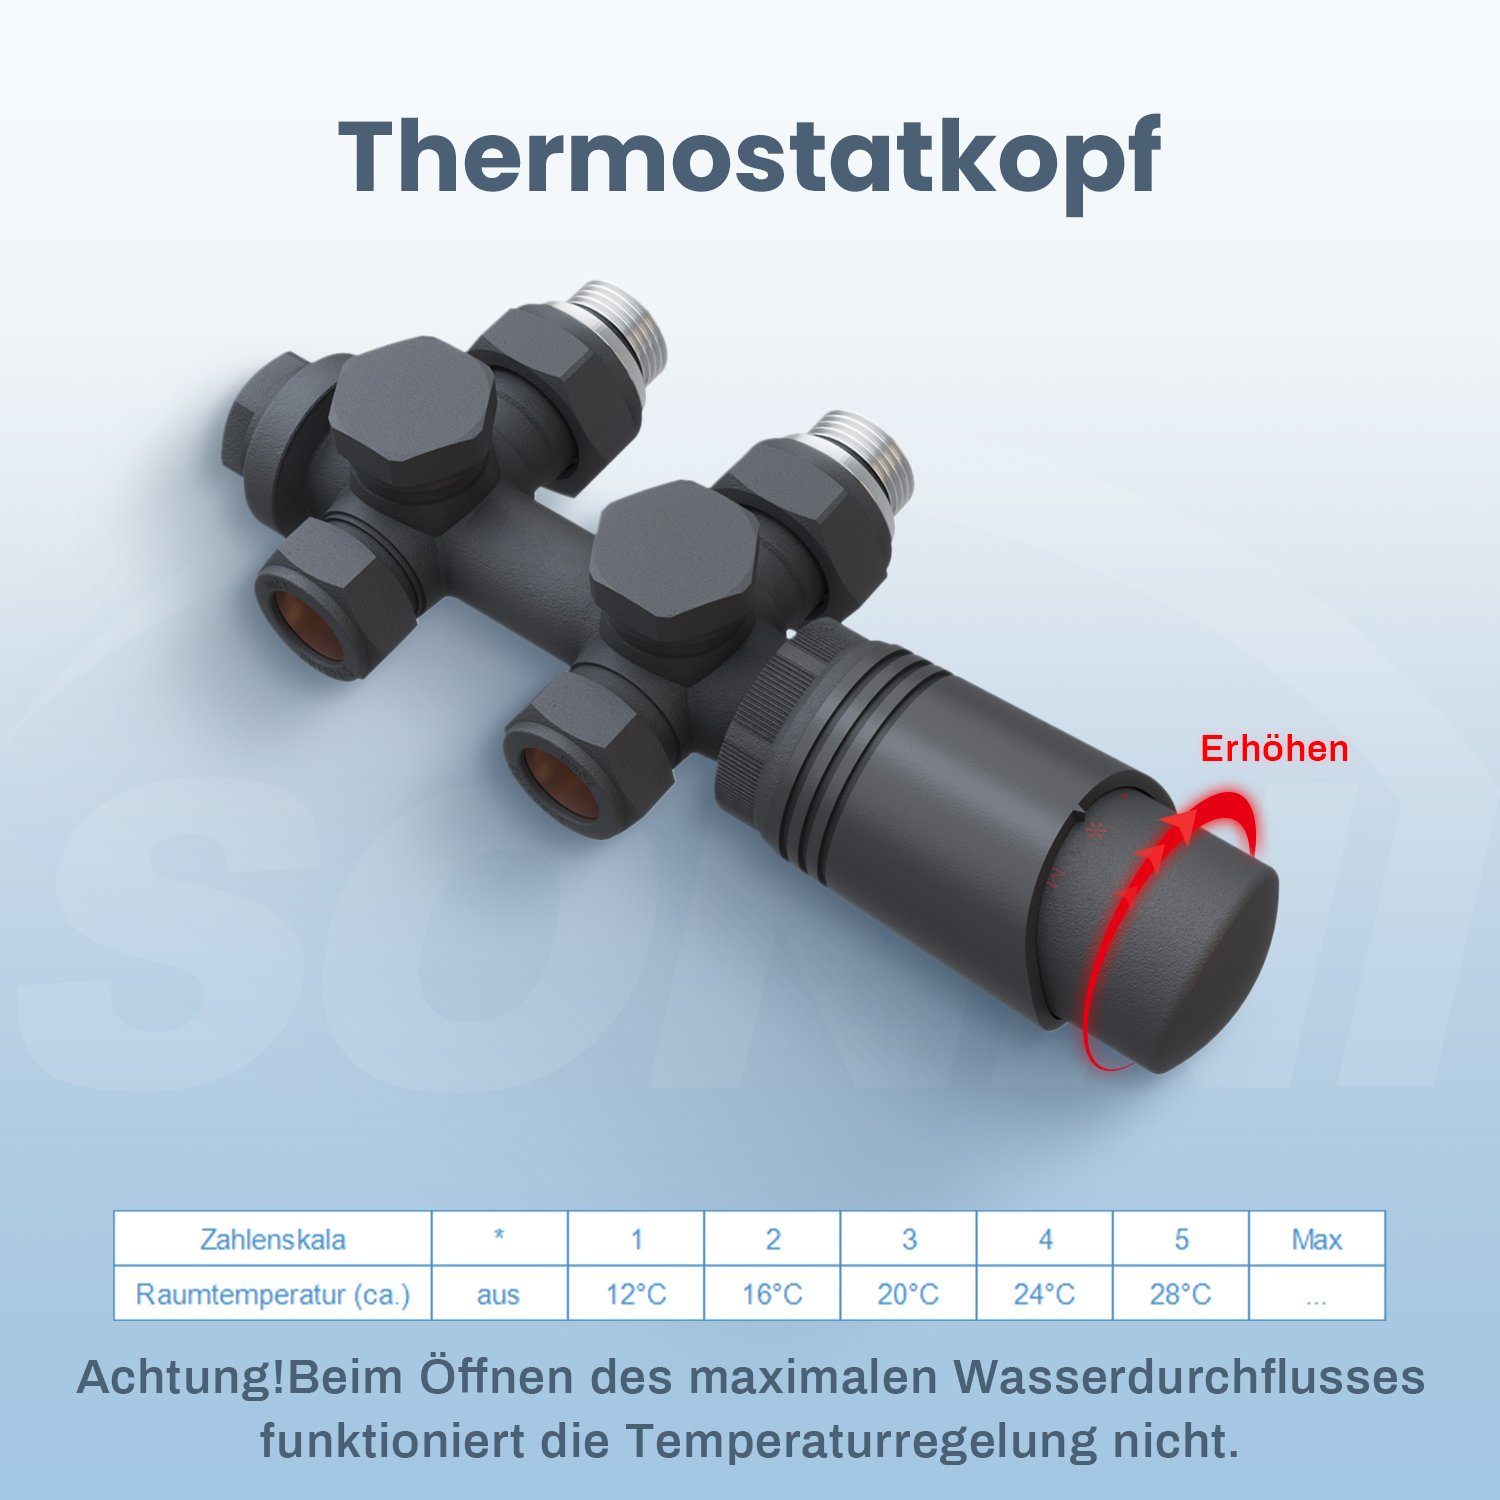 SONNI Heizkörperthermostat Multiblock Set für G 50mm Thermostatkopf Anschlussarmatur, Thermostat 1/2" ; Anthrazit mit Heizkörper